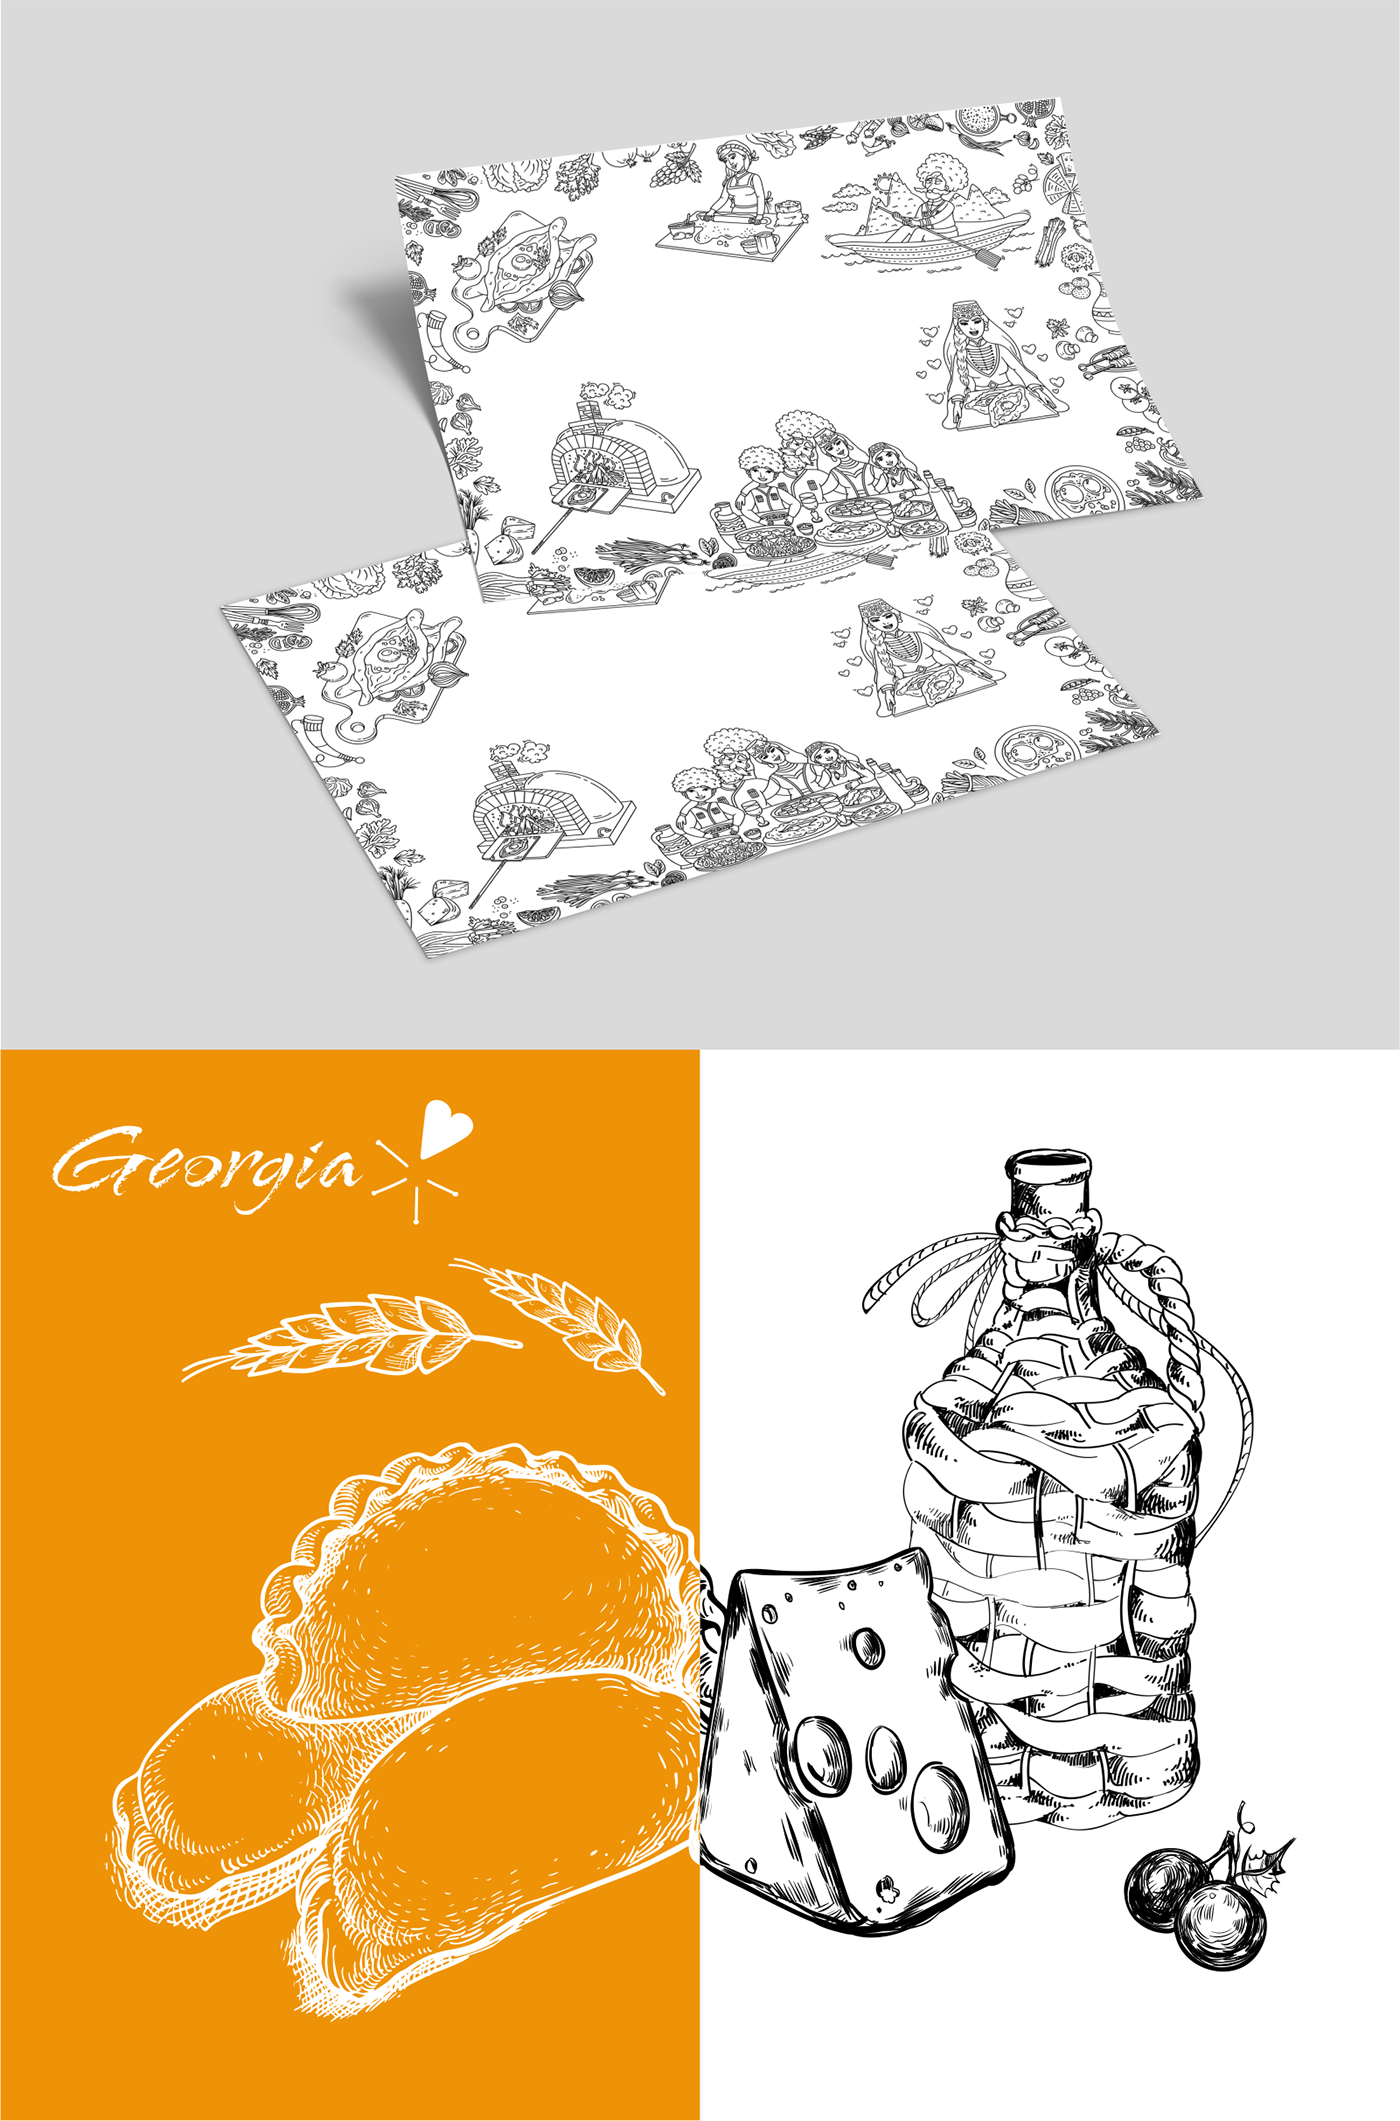 Разработка иллюстраций для упаковки хачапури 
ресторана грузинской кухни "Джо-Джо".